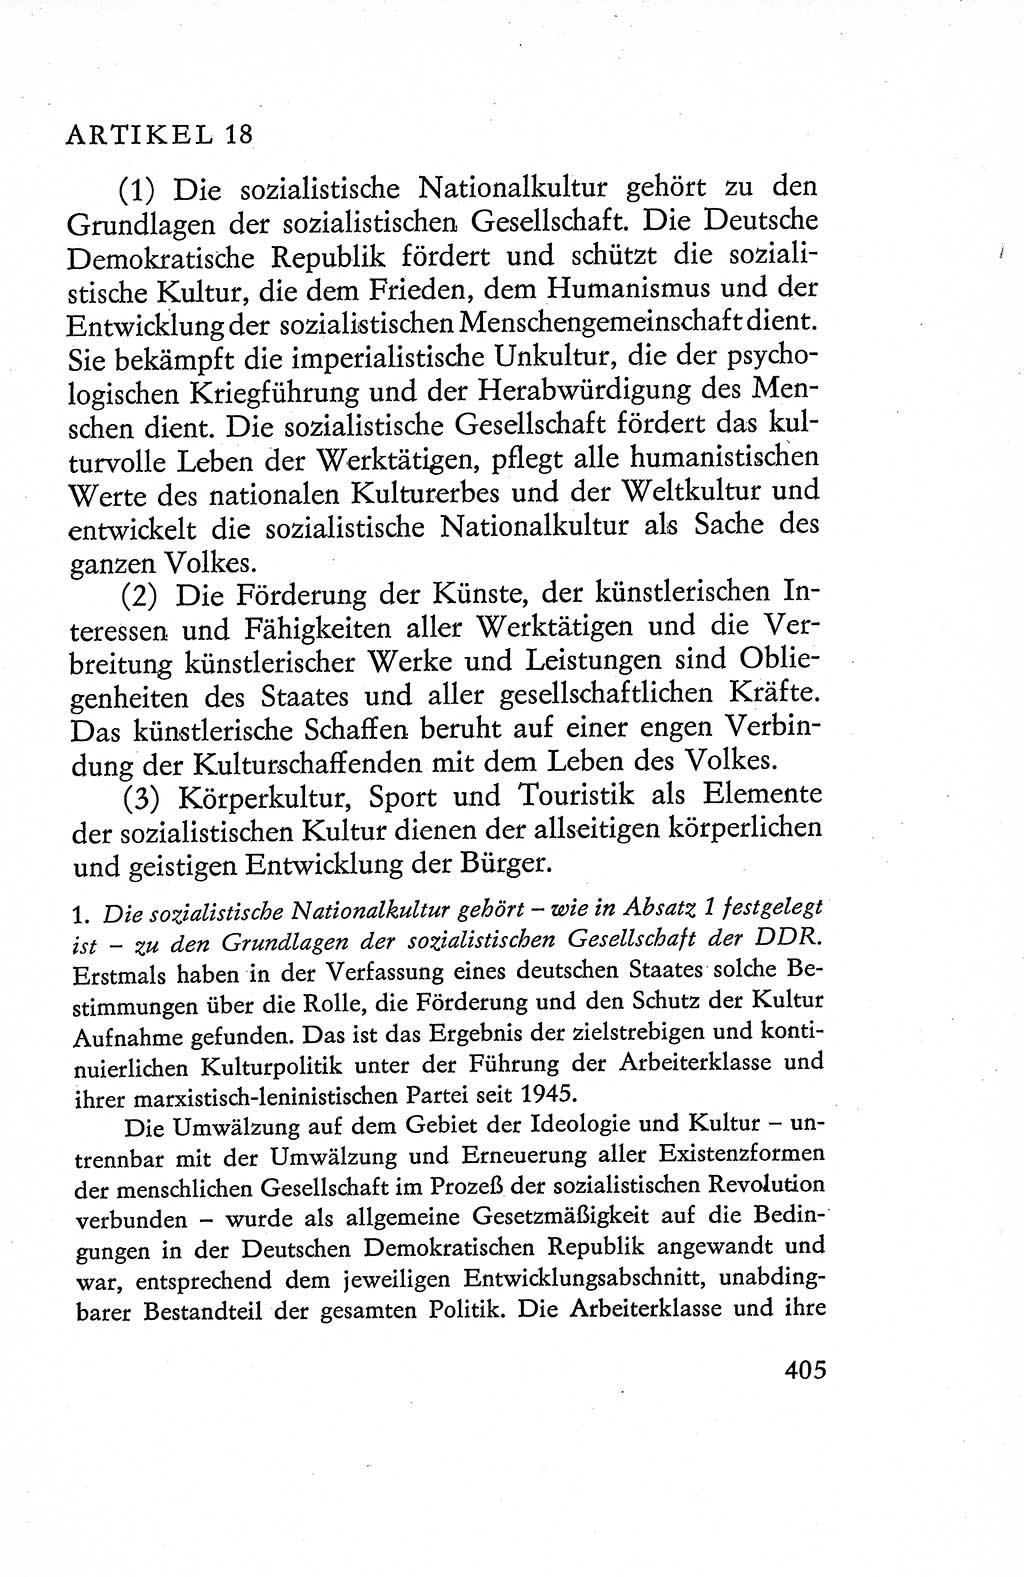 Verfassung der Deutschen Demokratischen Republik (DDR), Dokumente, Kommentar 1969, Band 1, Seite 405 (Verf. DDR Dok. Komm. 1969, Bd. 1, S. 405)